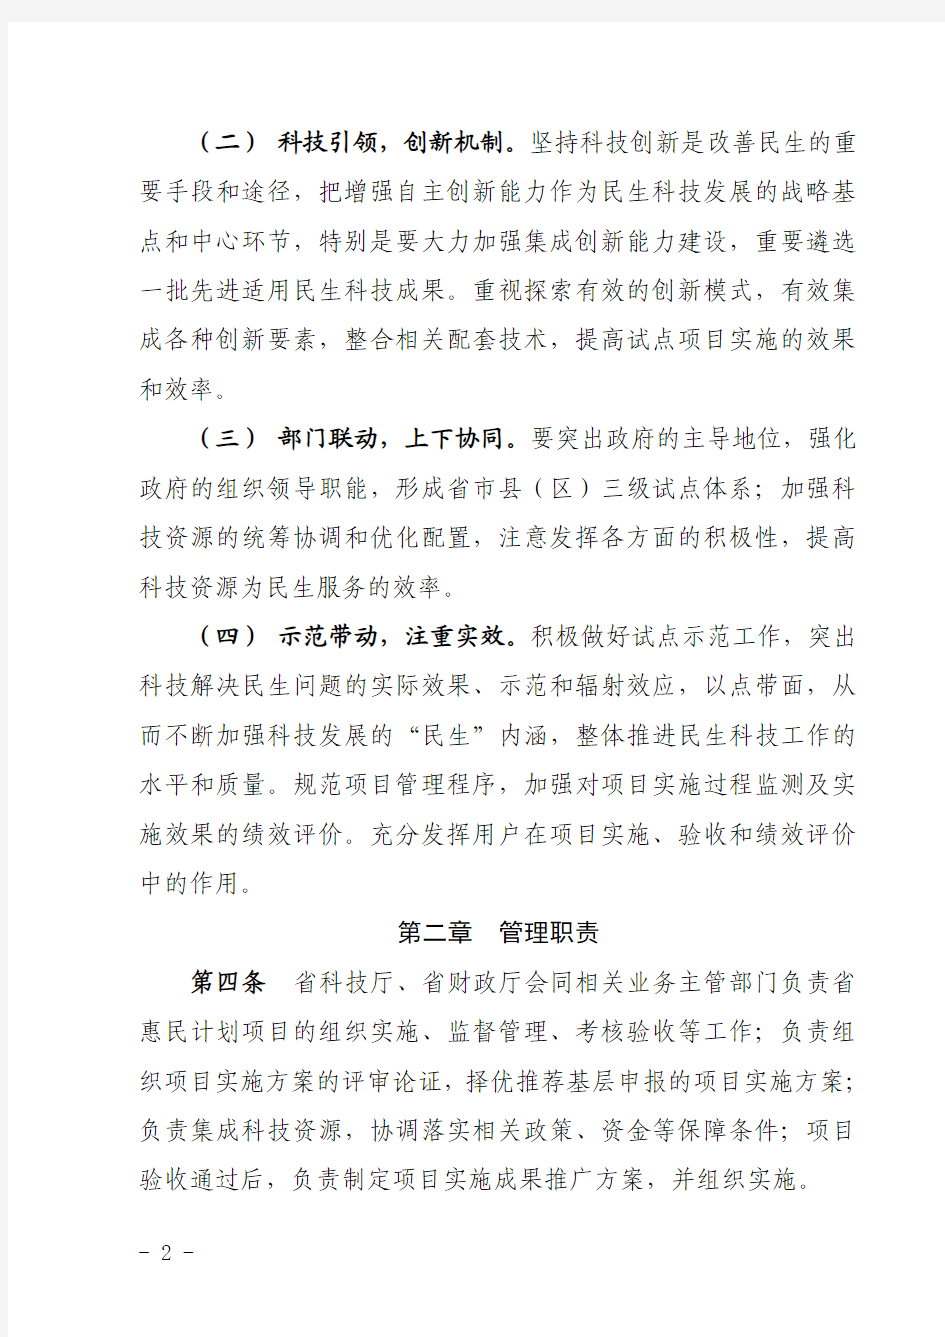 2013年 广东省实施国家科技惠民计划管理细则(试行)